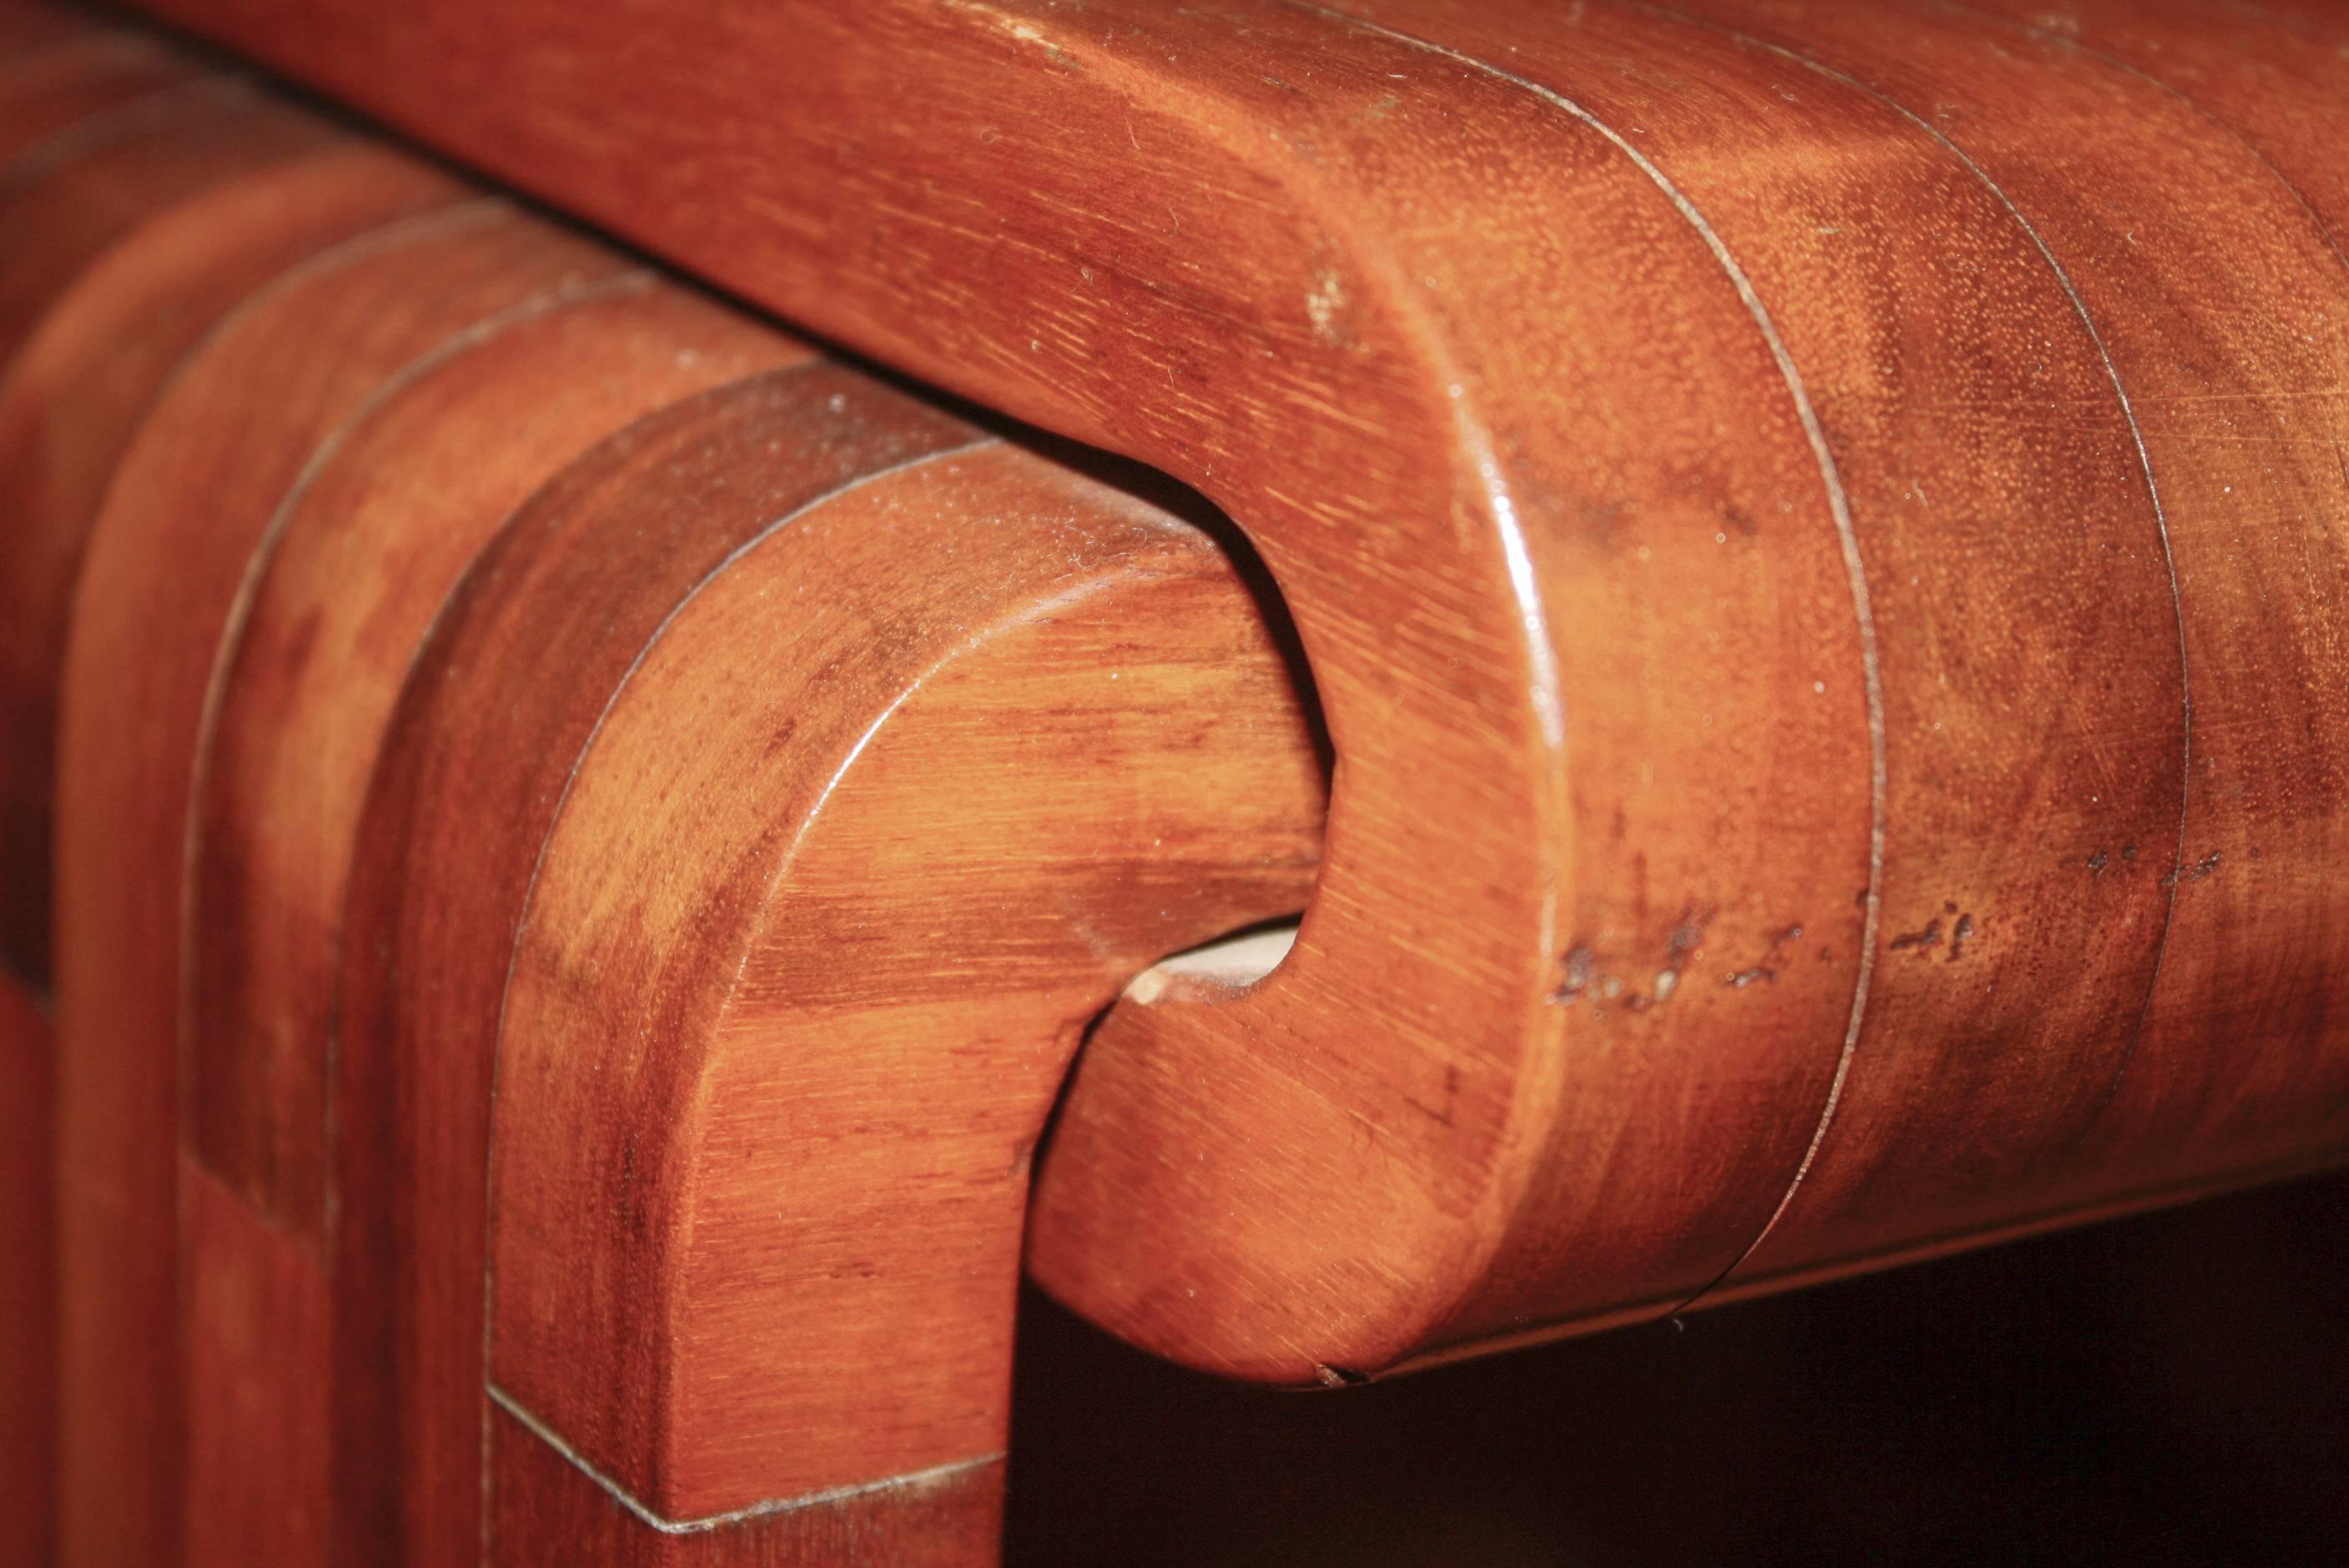 Vintage side table of laminated wood veneer pieces.